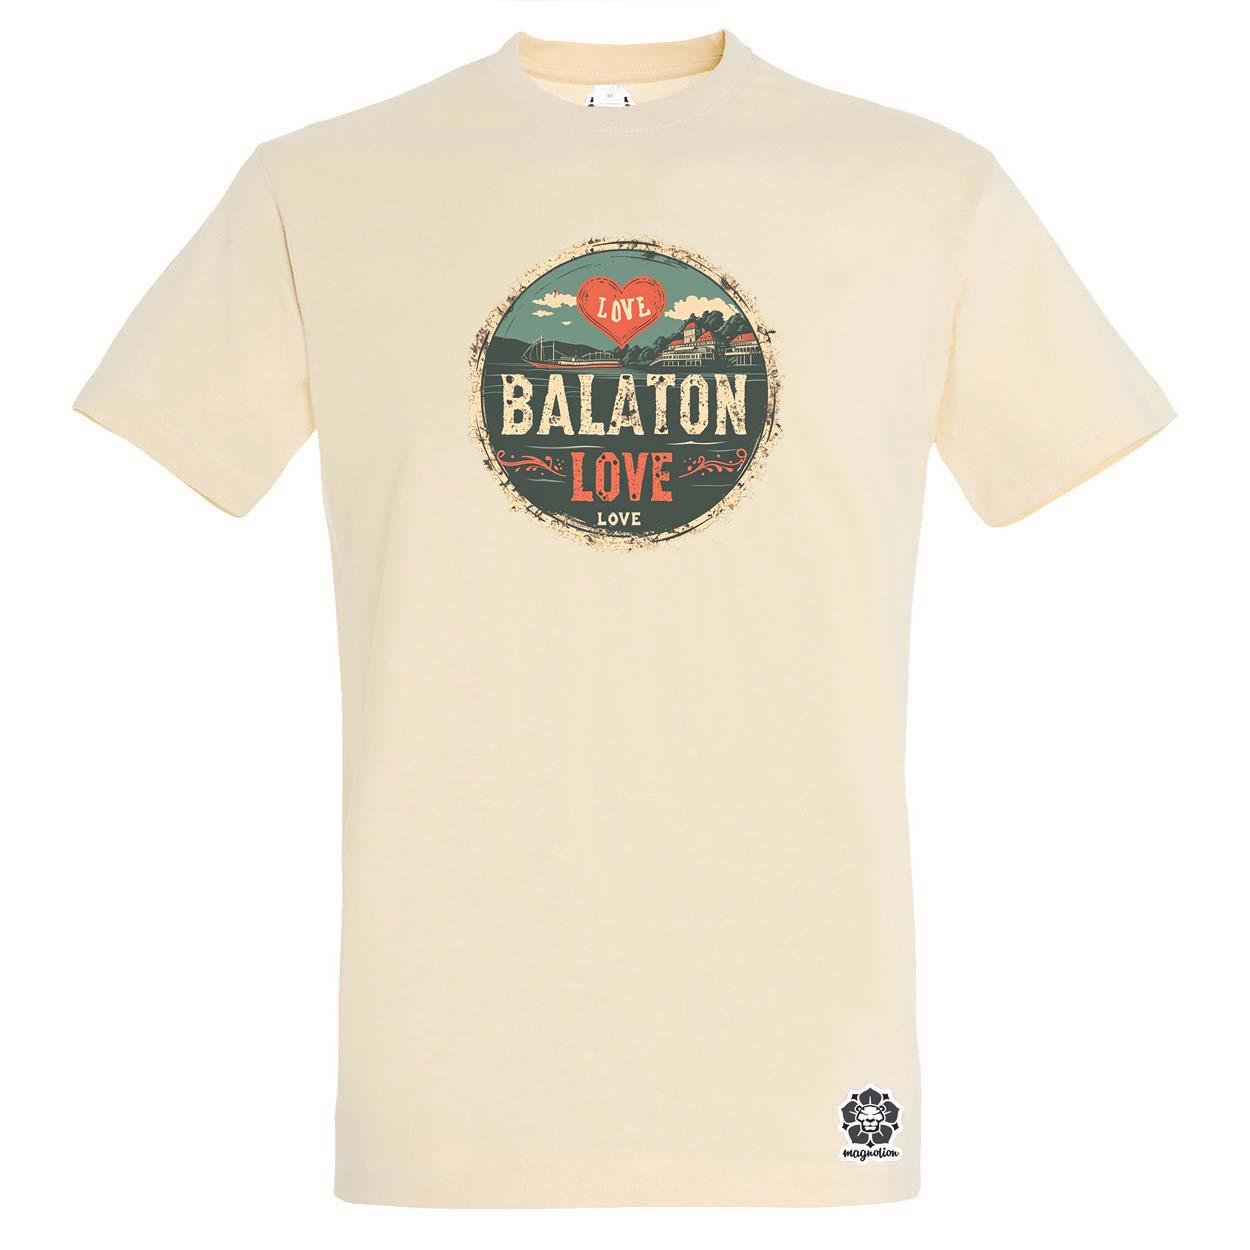 Balaton LOVE v5